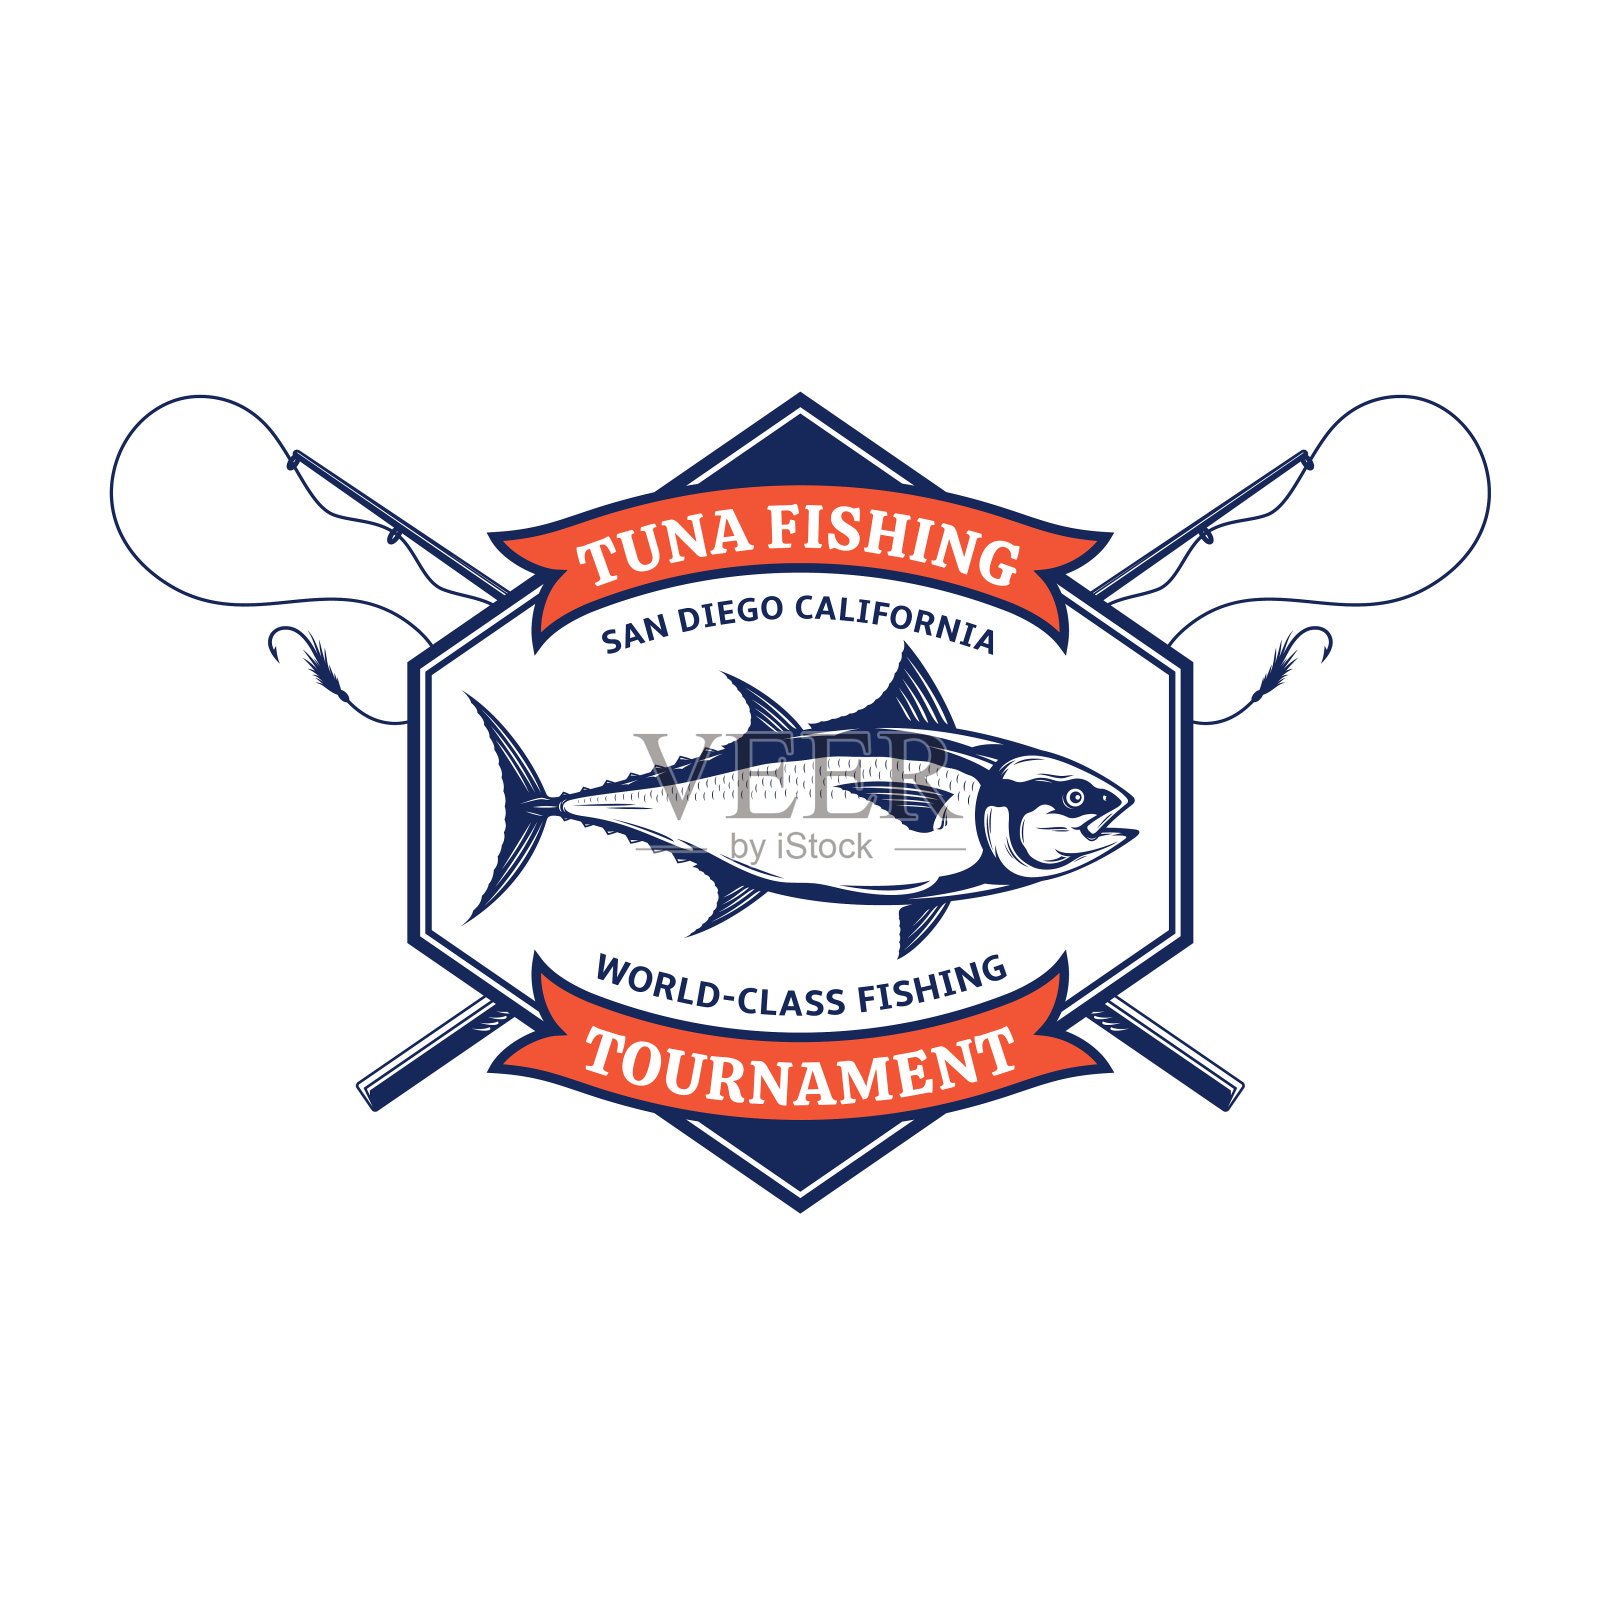 金枪鱼渔业的徽章插画图片素材